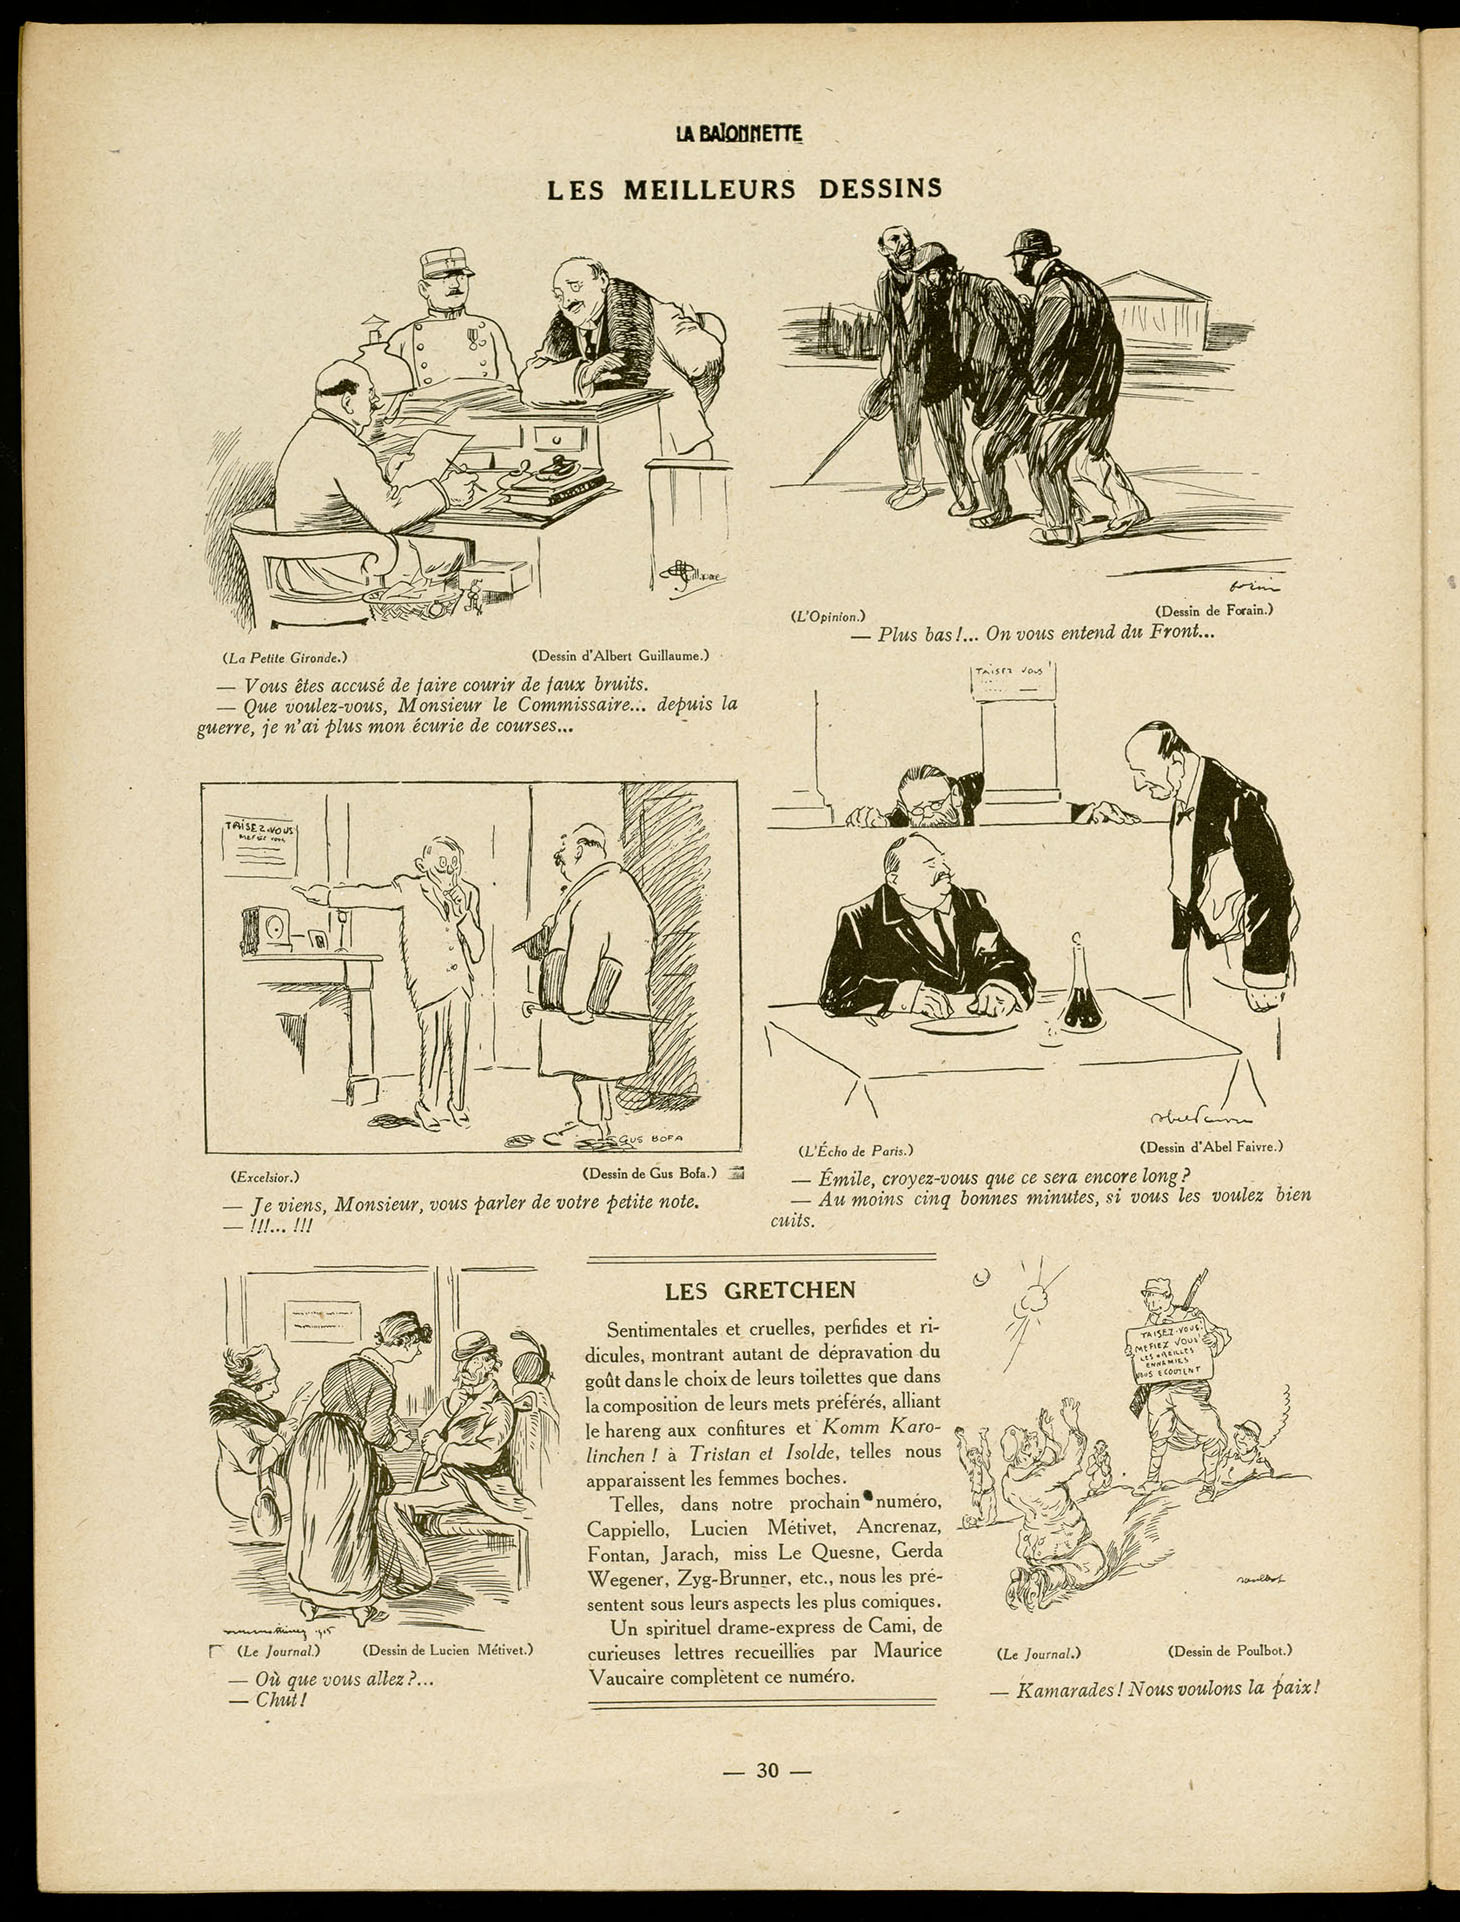 Rubrique "Leurs meilleurs dessins" de La Baïonnette du 13 janvier 1916. BM Reims, PER VIII 080